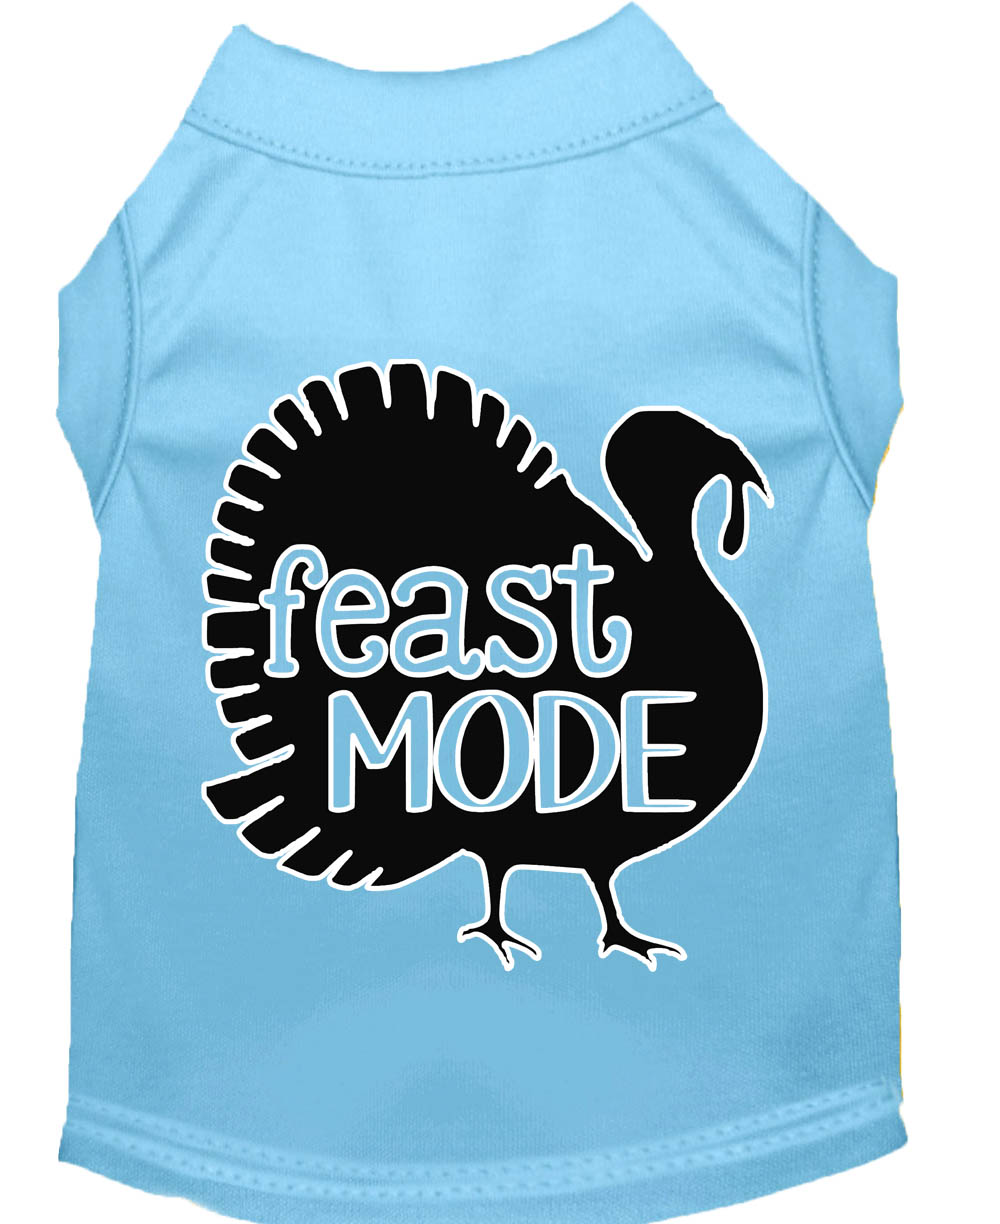 Feast Mode Screen Print Dog Shirt Baby Blue Med